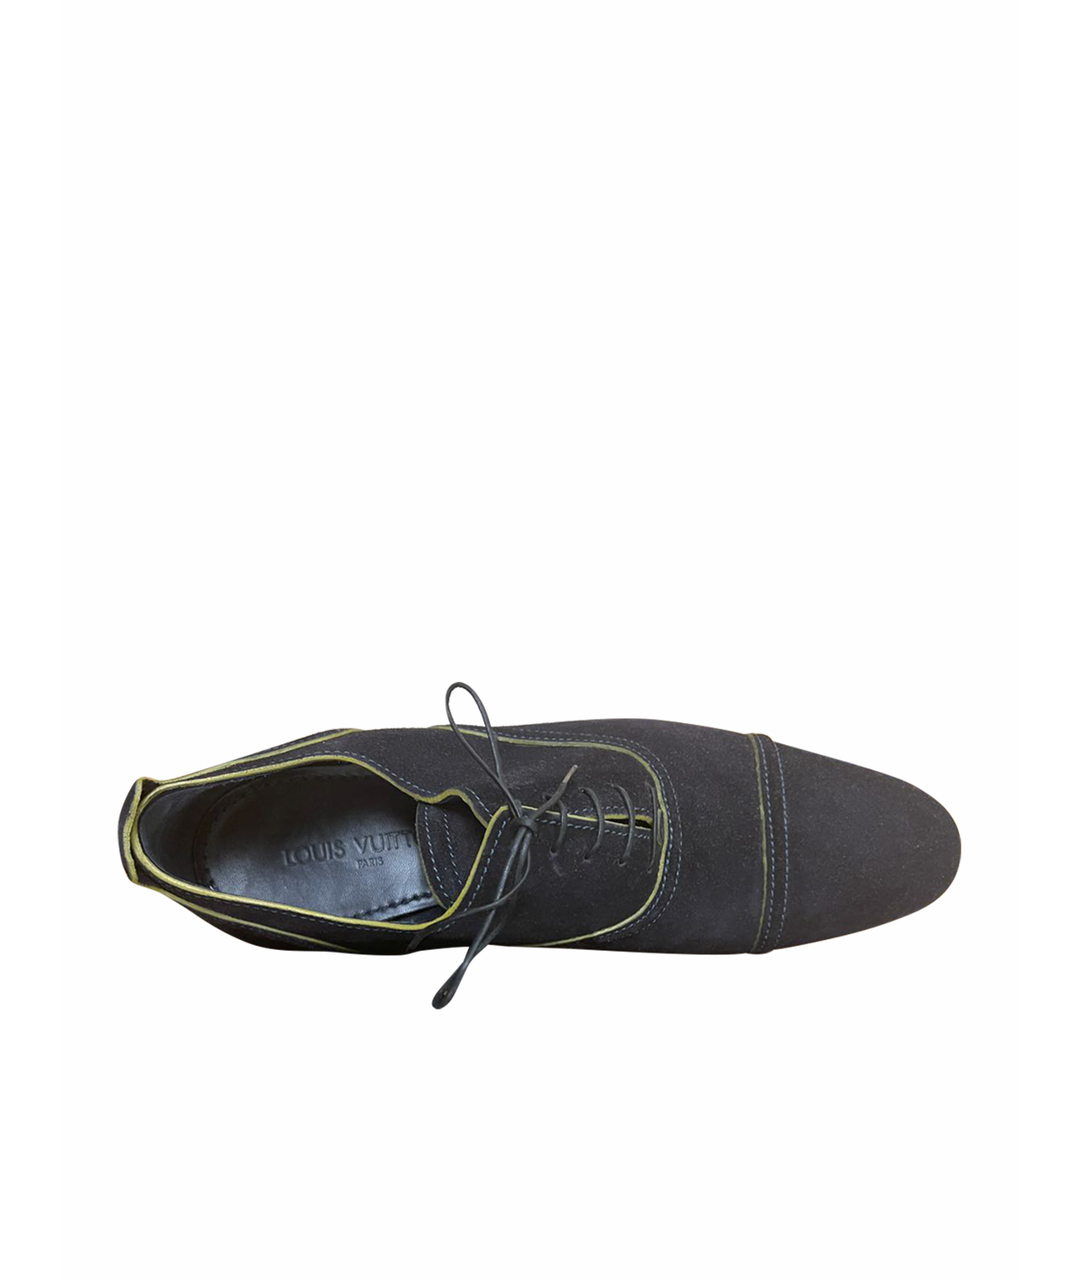 LOUIS VUITTON PRE-OWNED Темно-синие замшевые туфли, фото 1